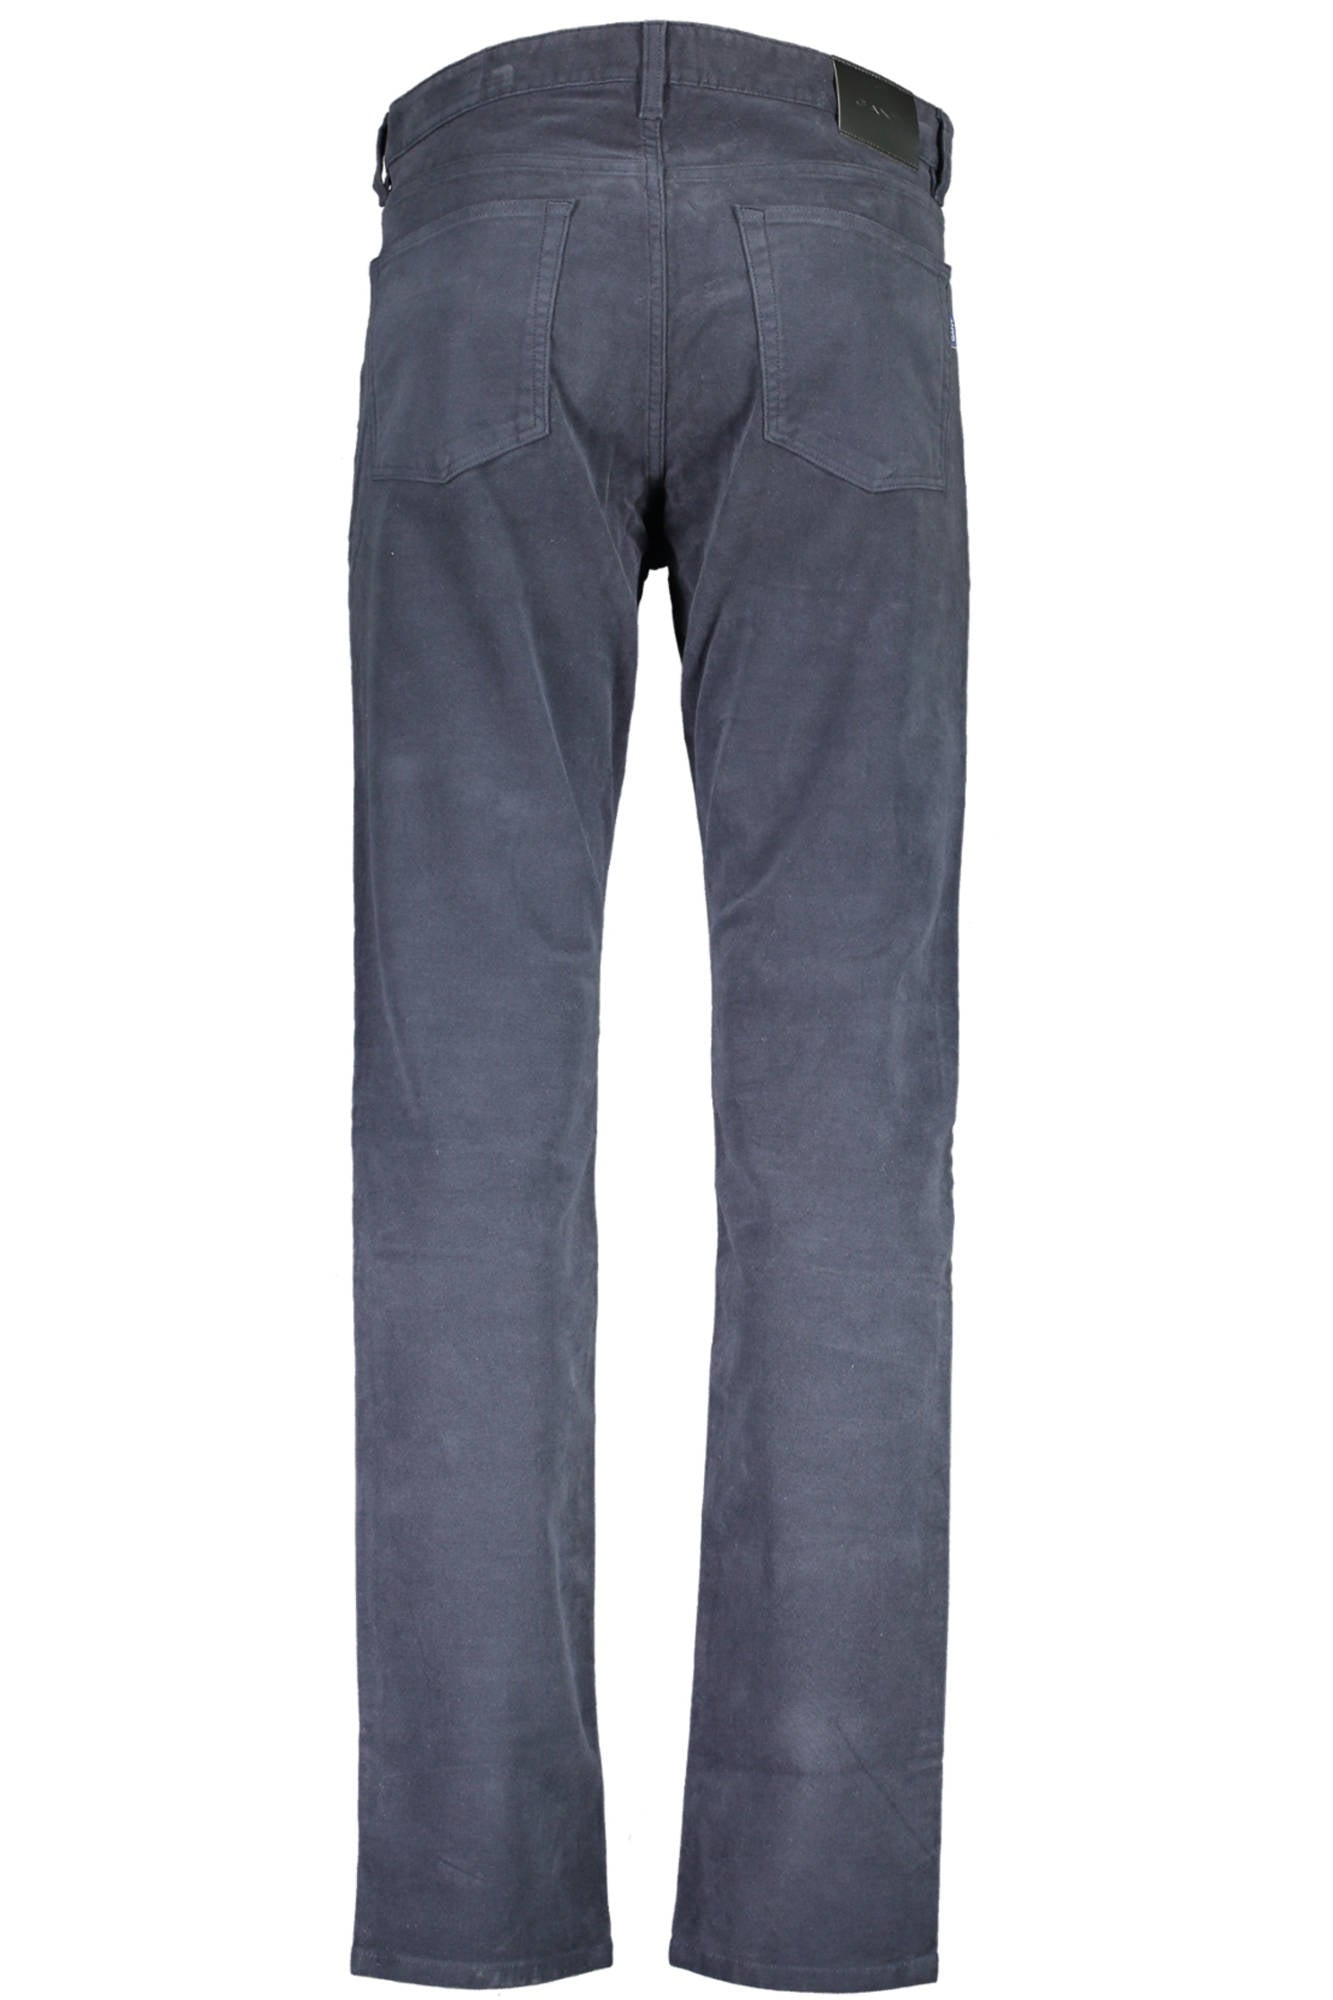 Gant Blue Jeans & Pant - Fizigo